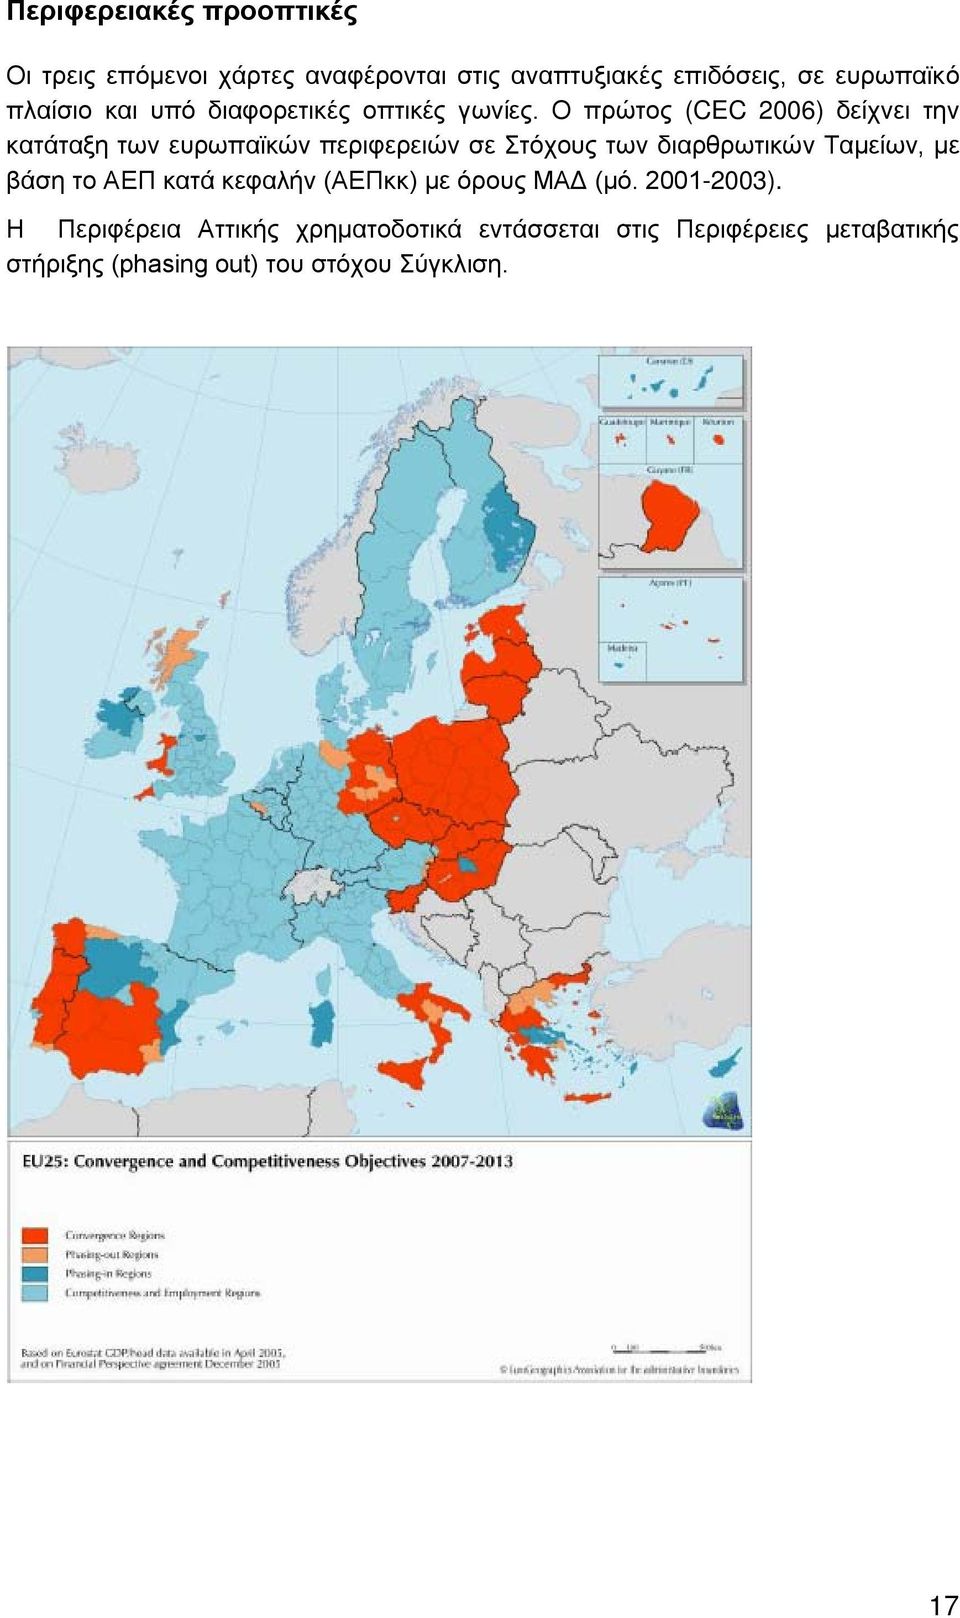 Ο πρώτος (CEC 2006) δείχνει την κατάταξη των ευρωπαϊκών περιφερειών σε Στόχους των διαρθρωτικών Ταμείων, με